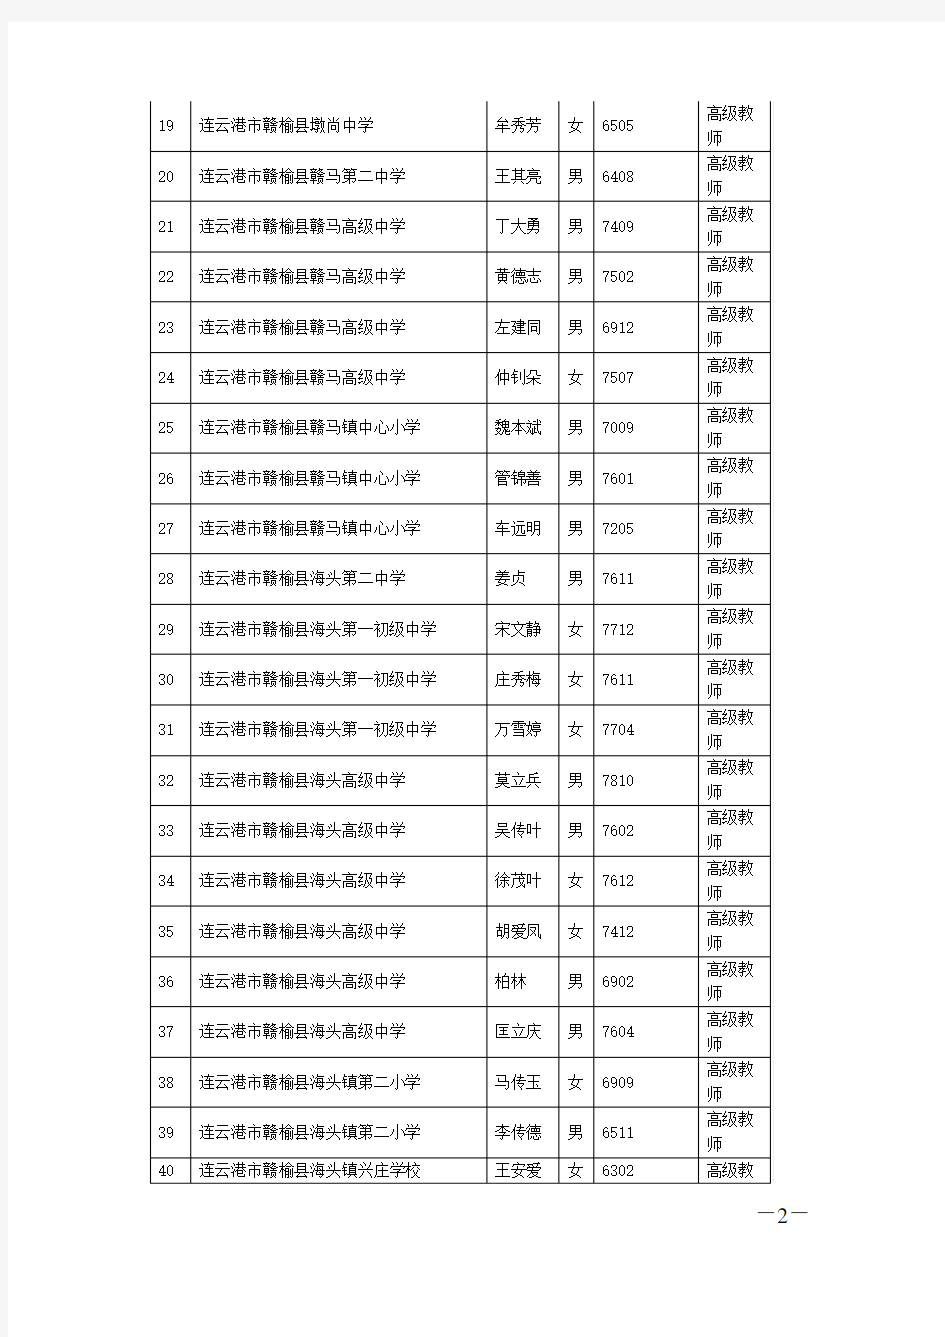 2013年连云港中小学高级教师专业技术资格